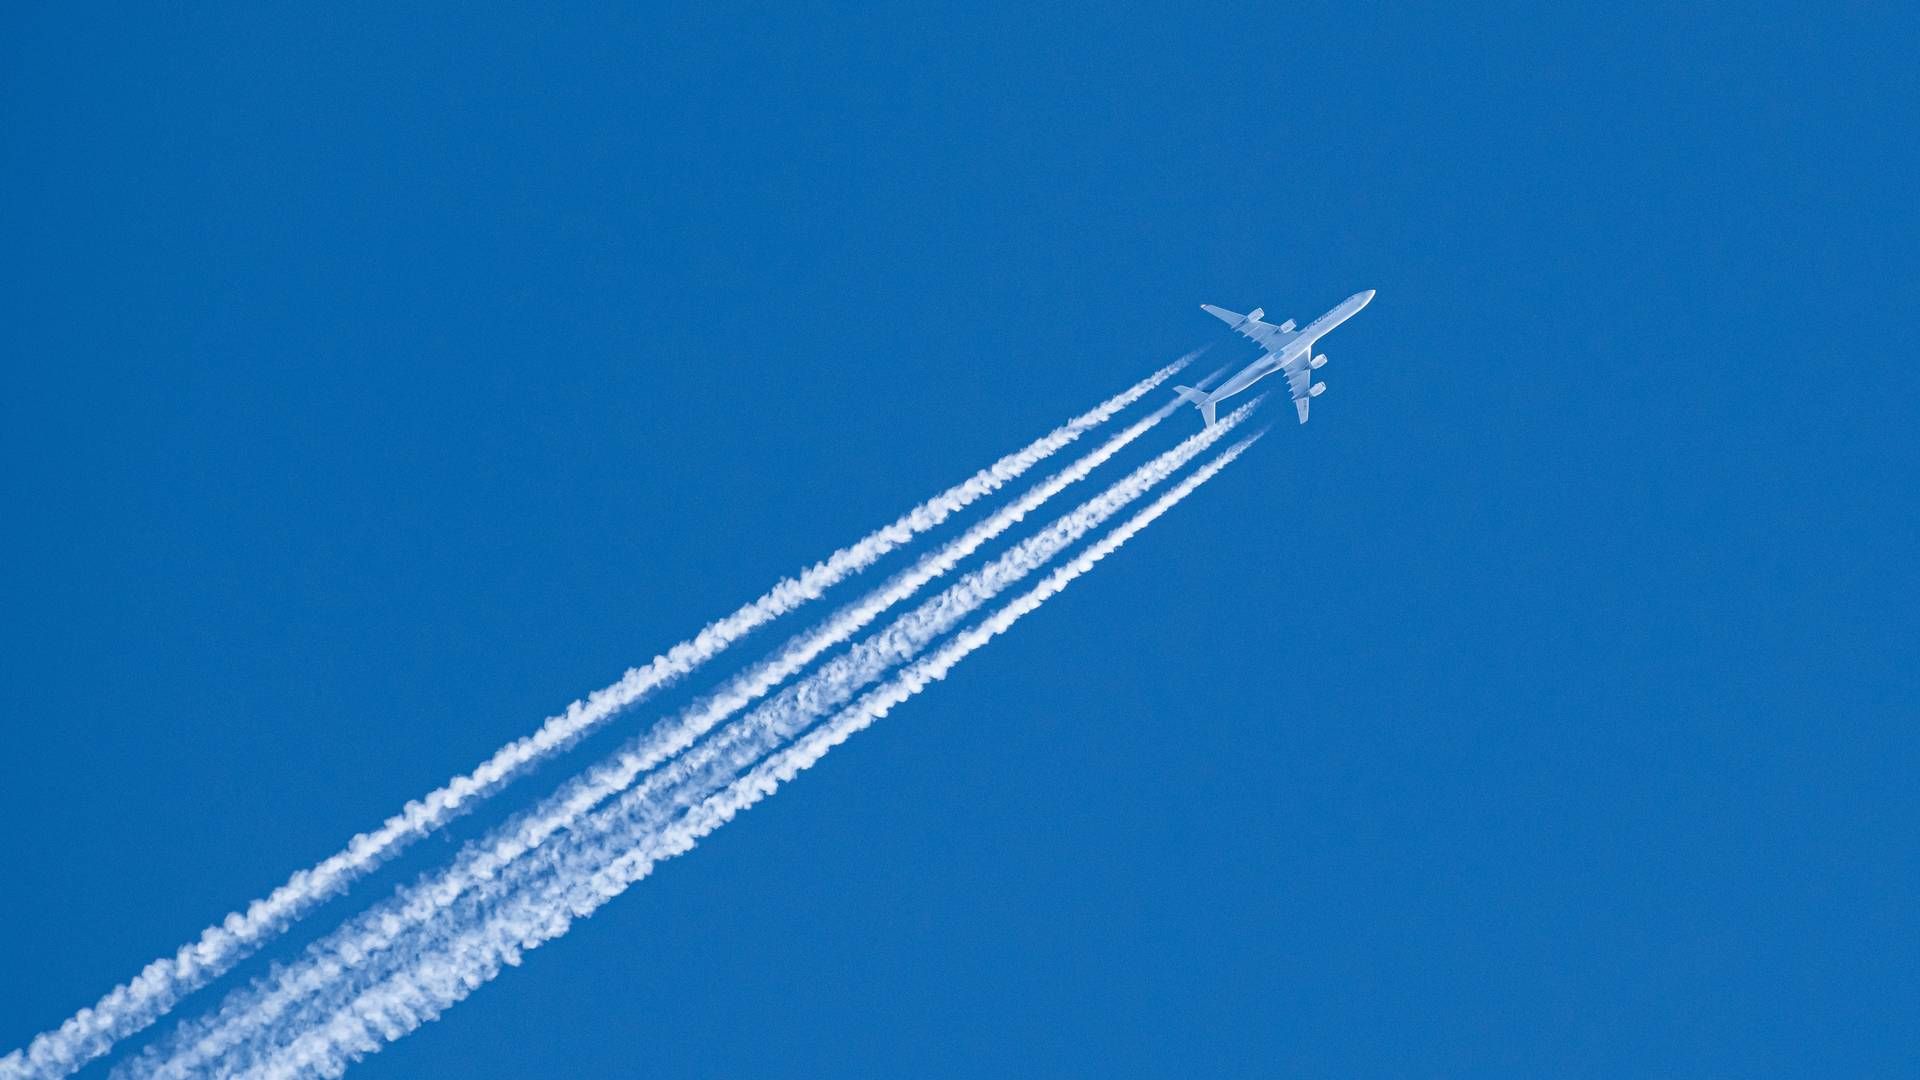 Op til 54 pct. af kondensstriberne fra fly kan ifølge et forsøg reduceres ved at flyve lavere. | Foto: Silas Stein/AP/Ritzau Scanpix